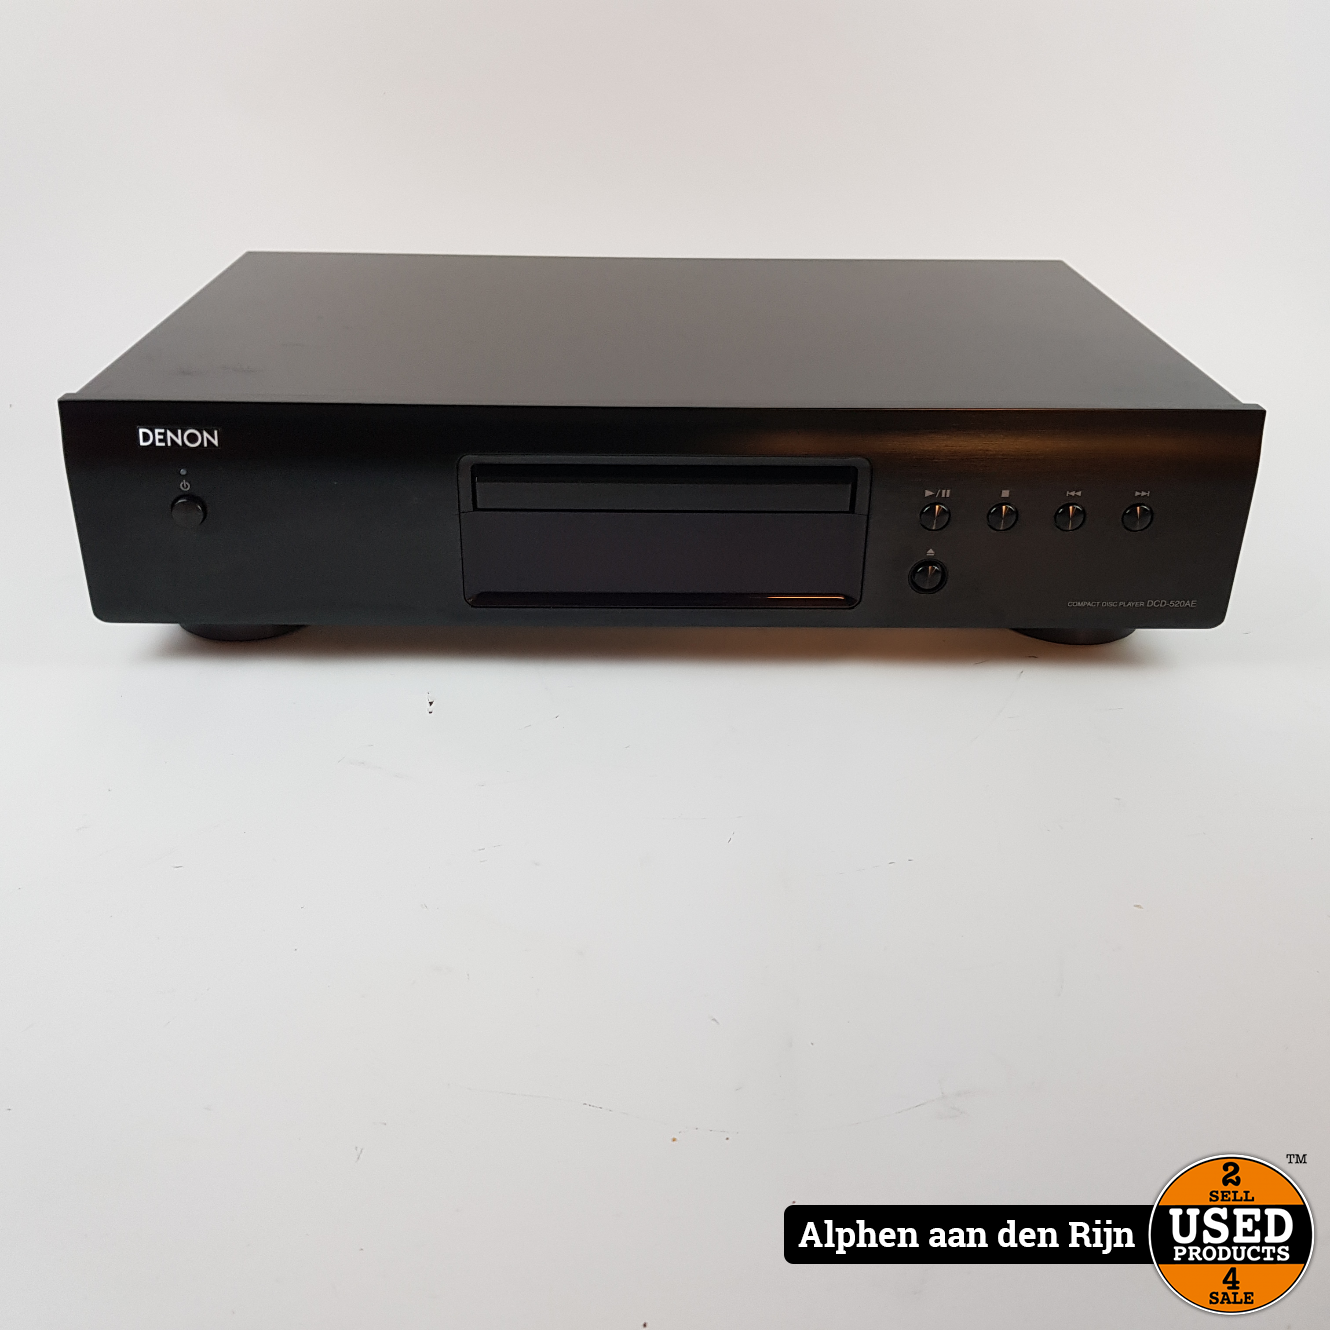 Serie van Bruin Collega Denon DCD-520AE CD speler - Used Products Alphen aan den Rijn